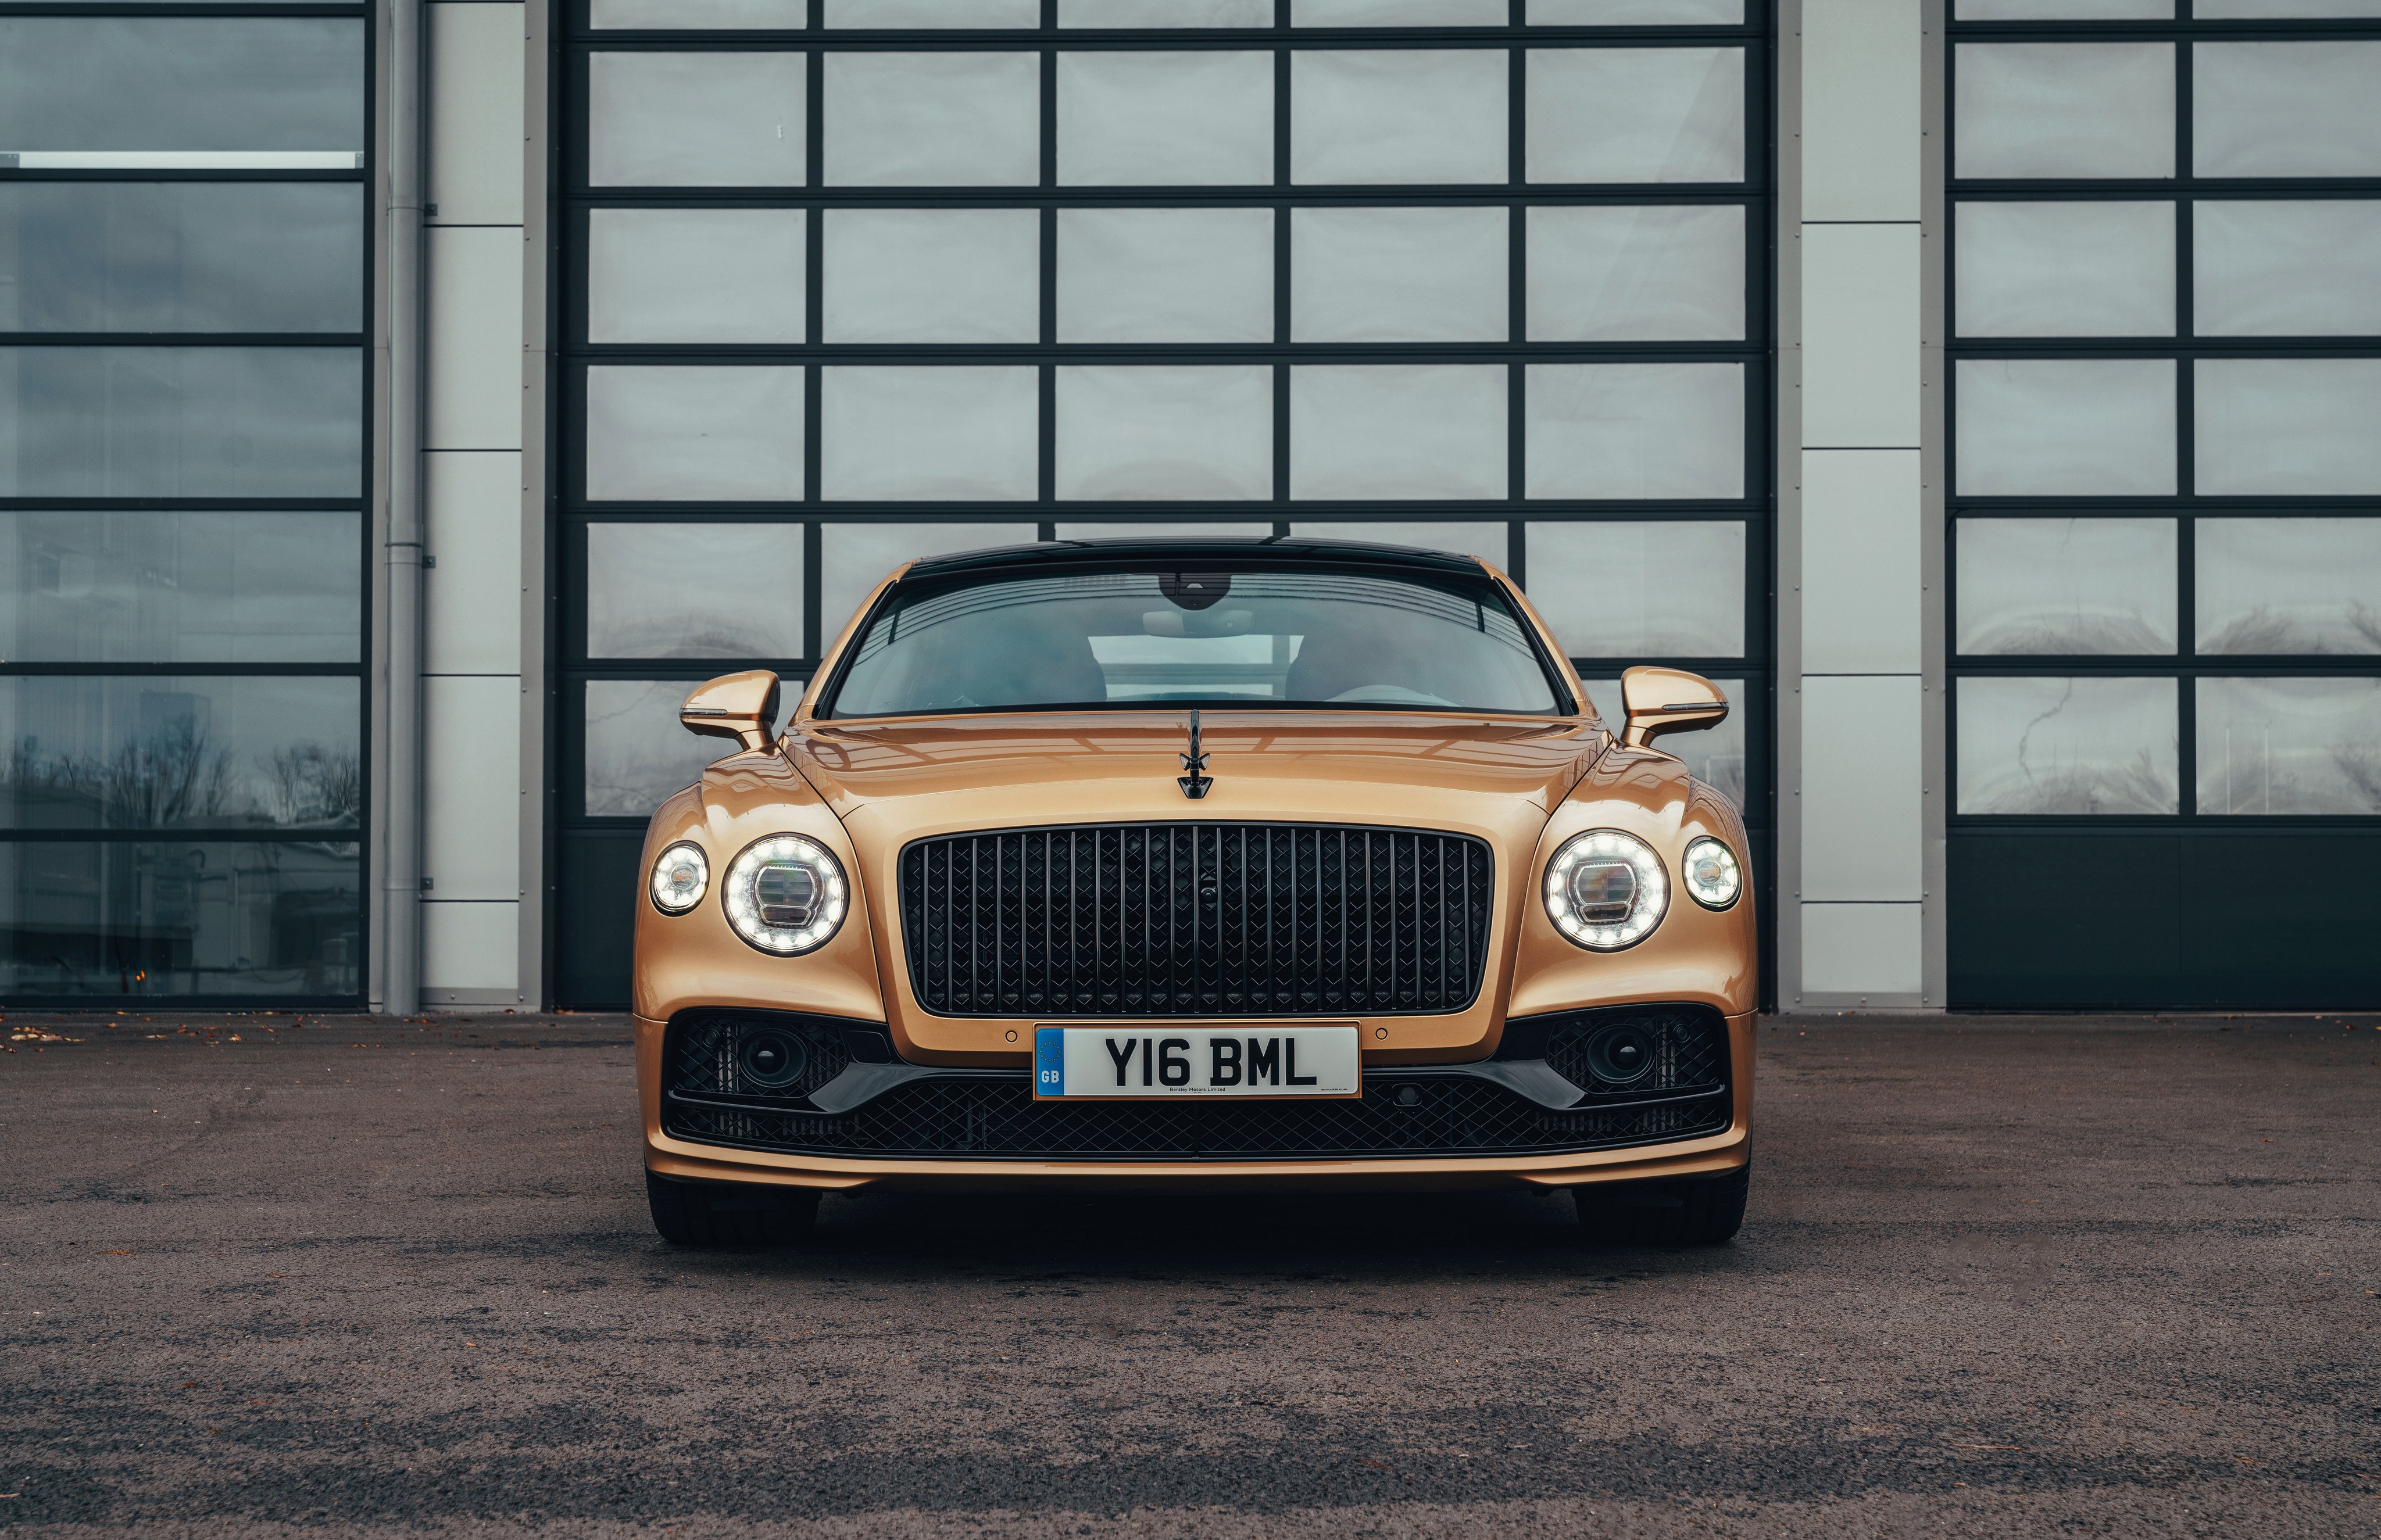 Vehicles Bentley Flying Spur V8 HD Wallpaper | Background Image